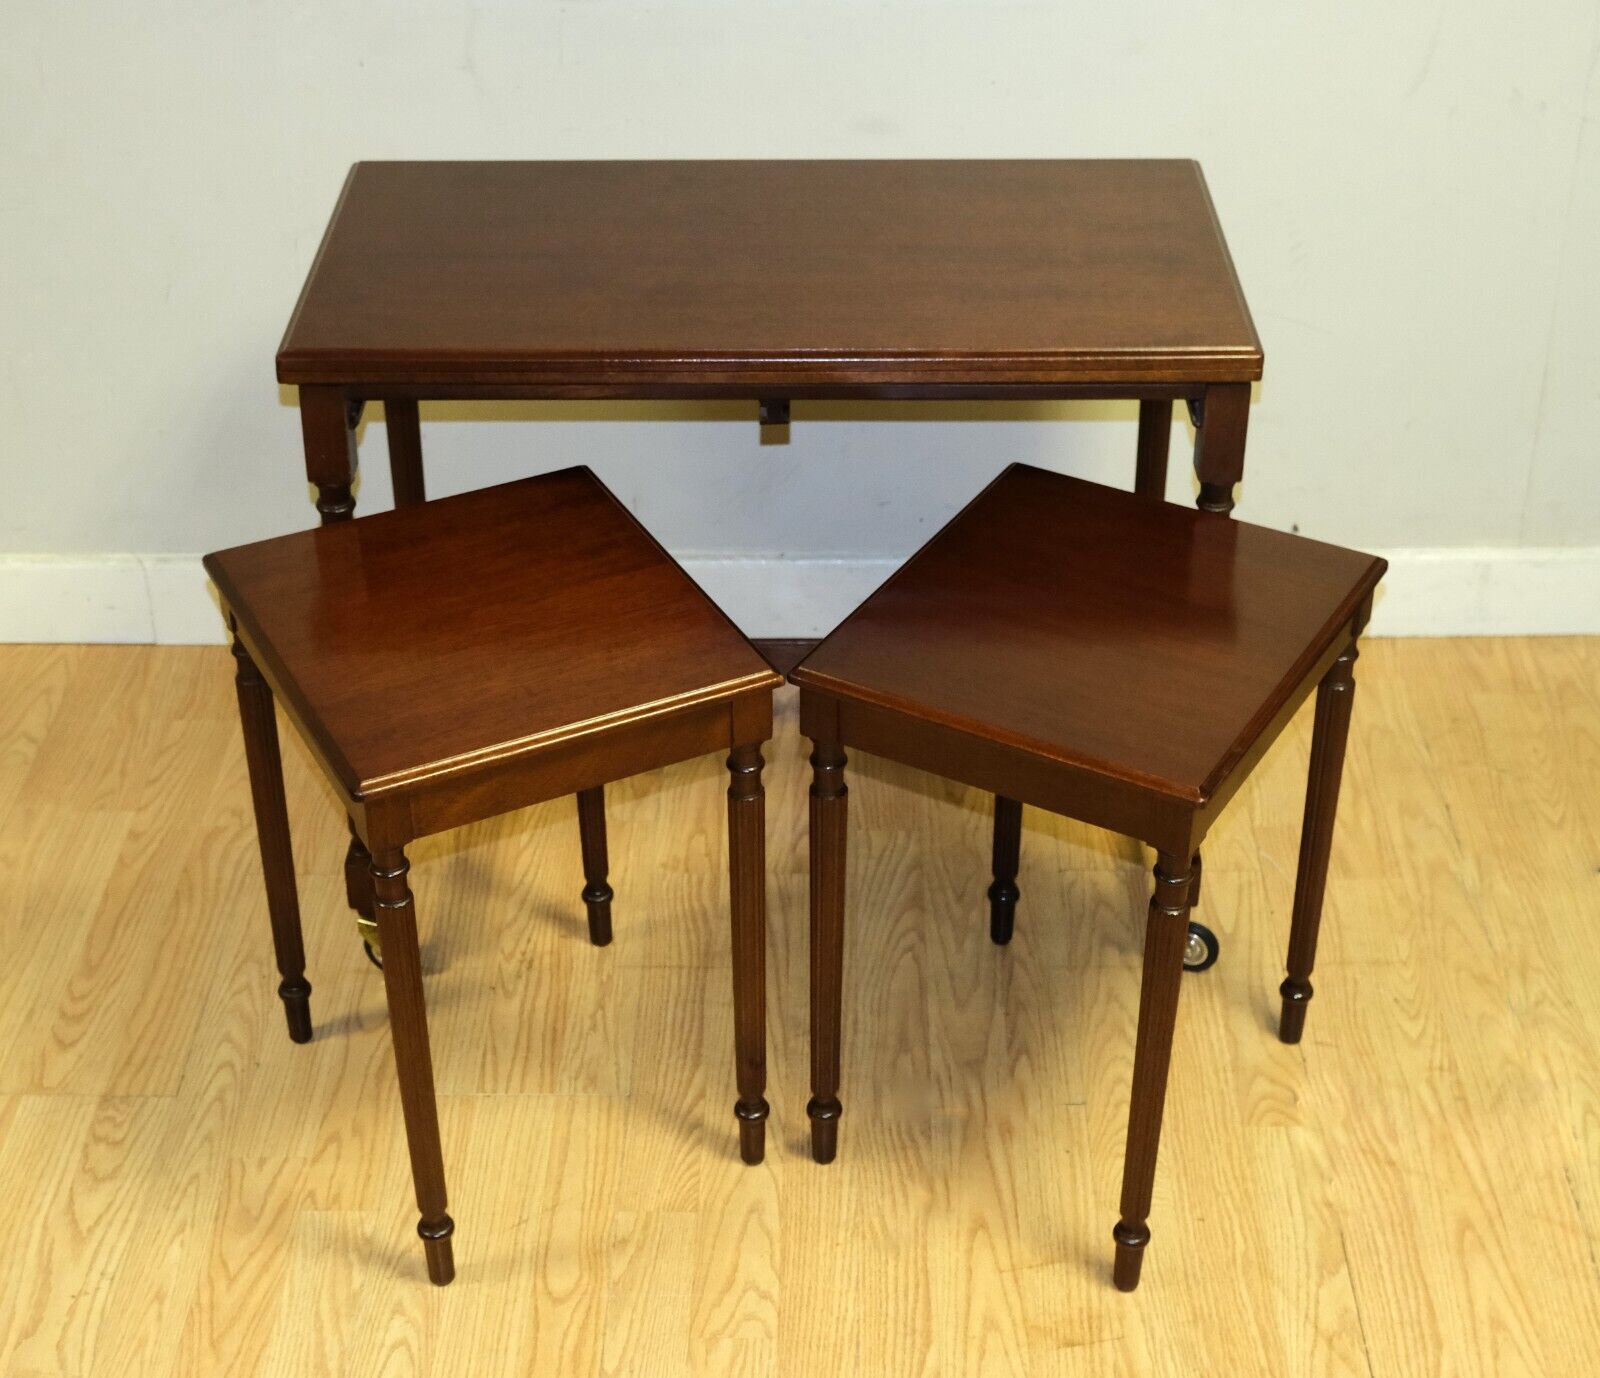 Wir freuen uns, diese schöne Vintage Metamorphic Mahagoni Nest von Tischen auf Rollen zum Verkauf anbieten.

Dieses schöne Set bietet Ihnen einen mittelgroßen Tisch, der sich zu einem Raum mit doppelter Tischplatte öffnet. Dazu gibt es ein schönes